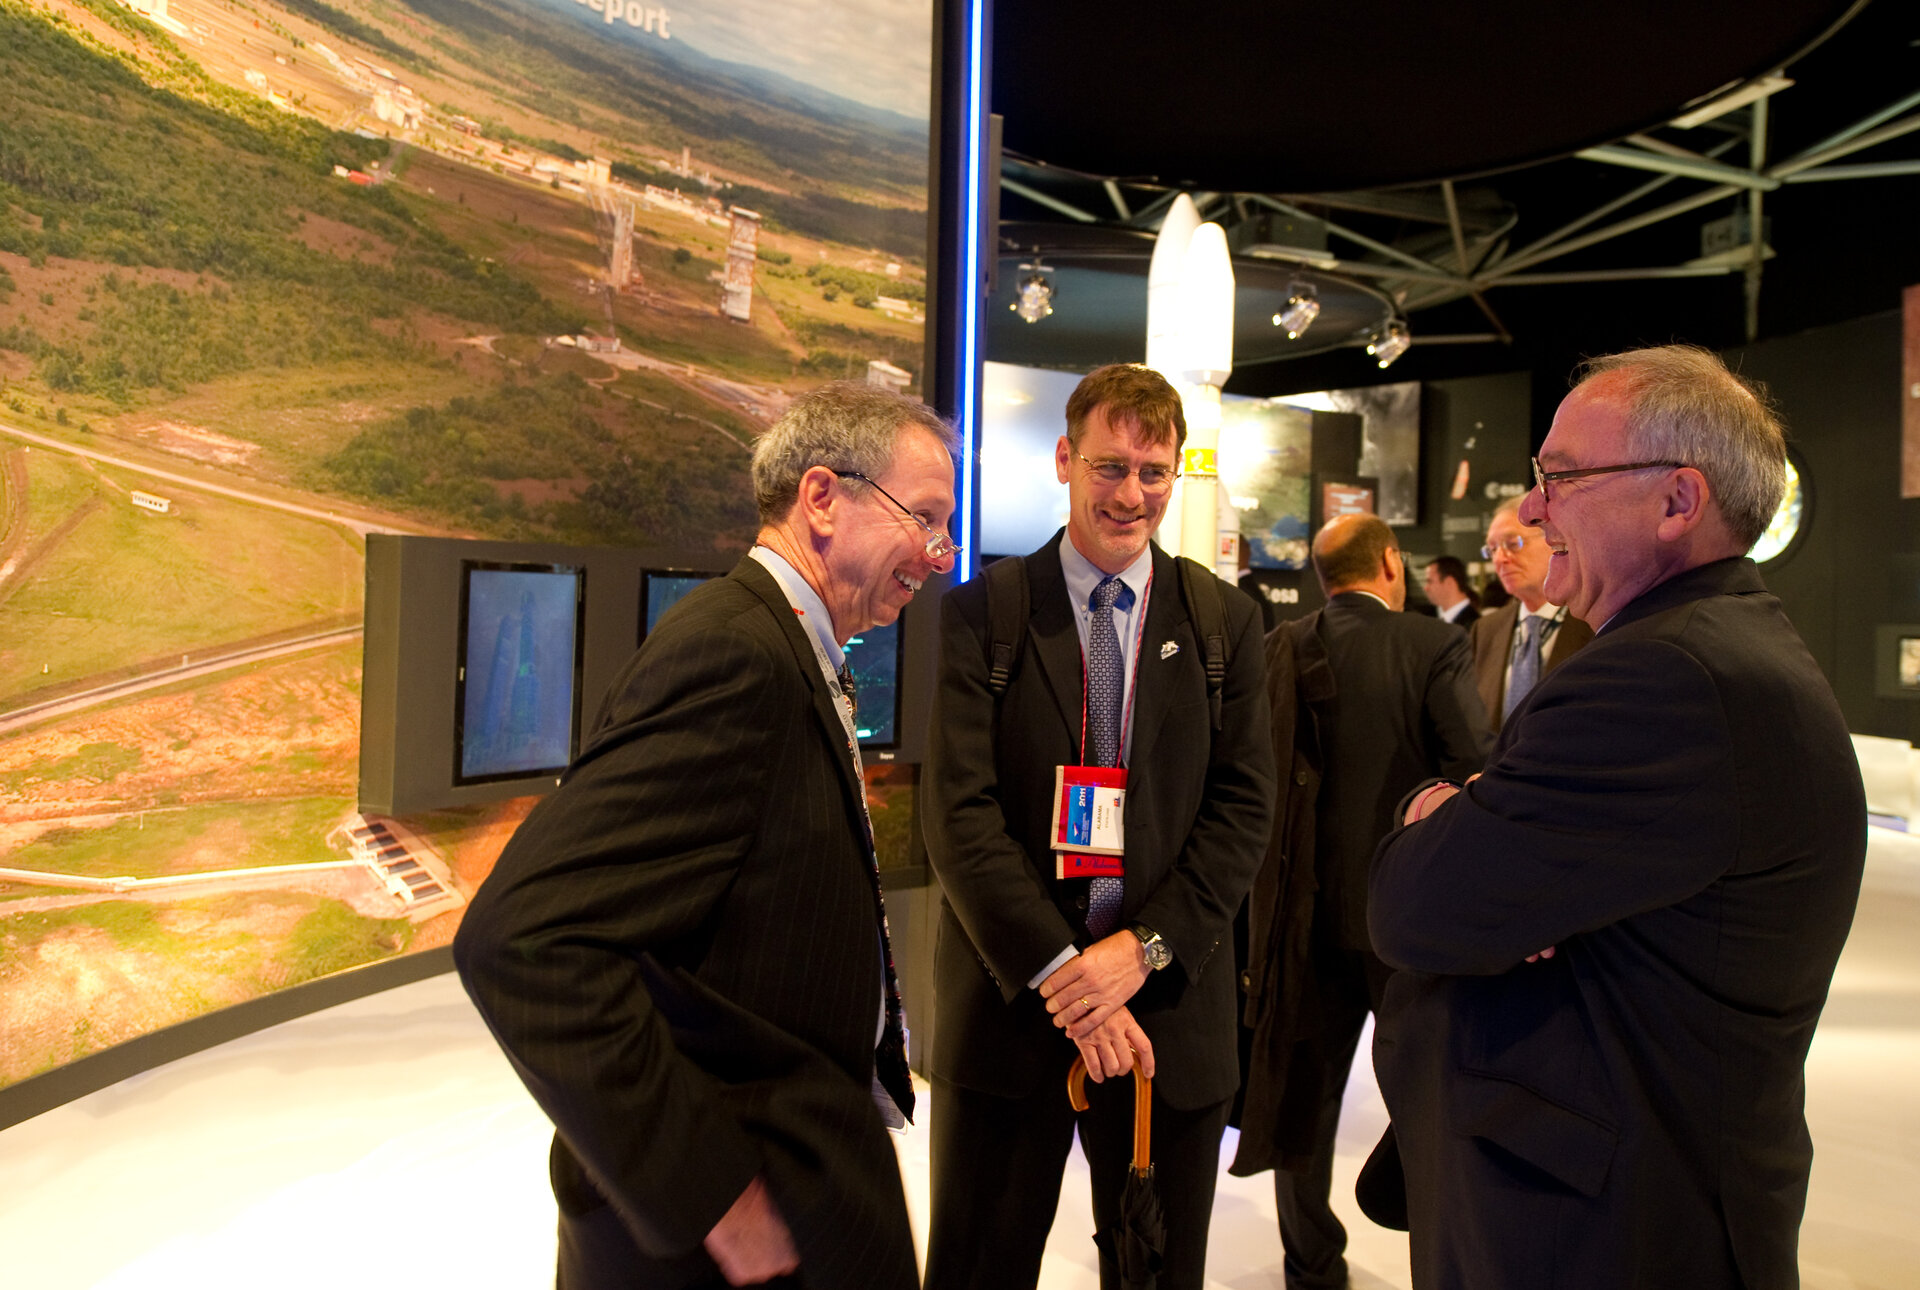 Michael Griffin and Jean-Jacques Dordain visit the ESA pavilion